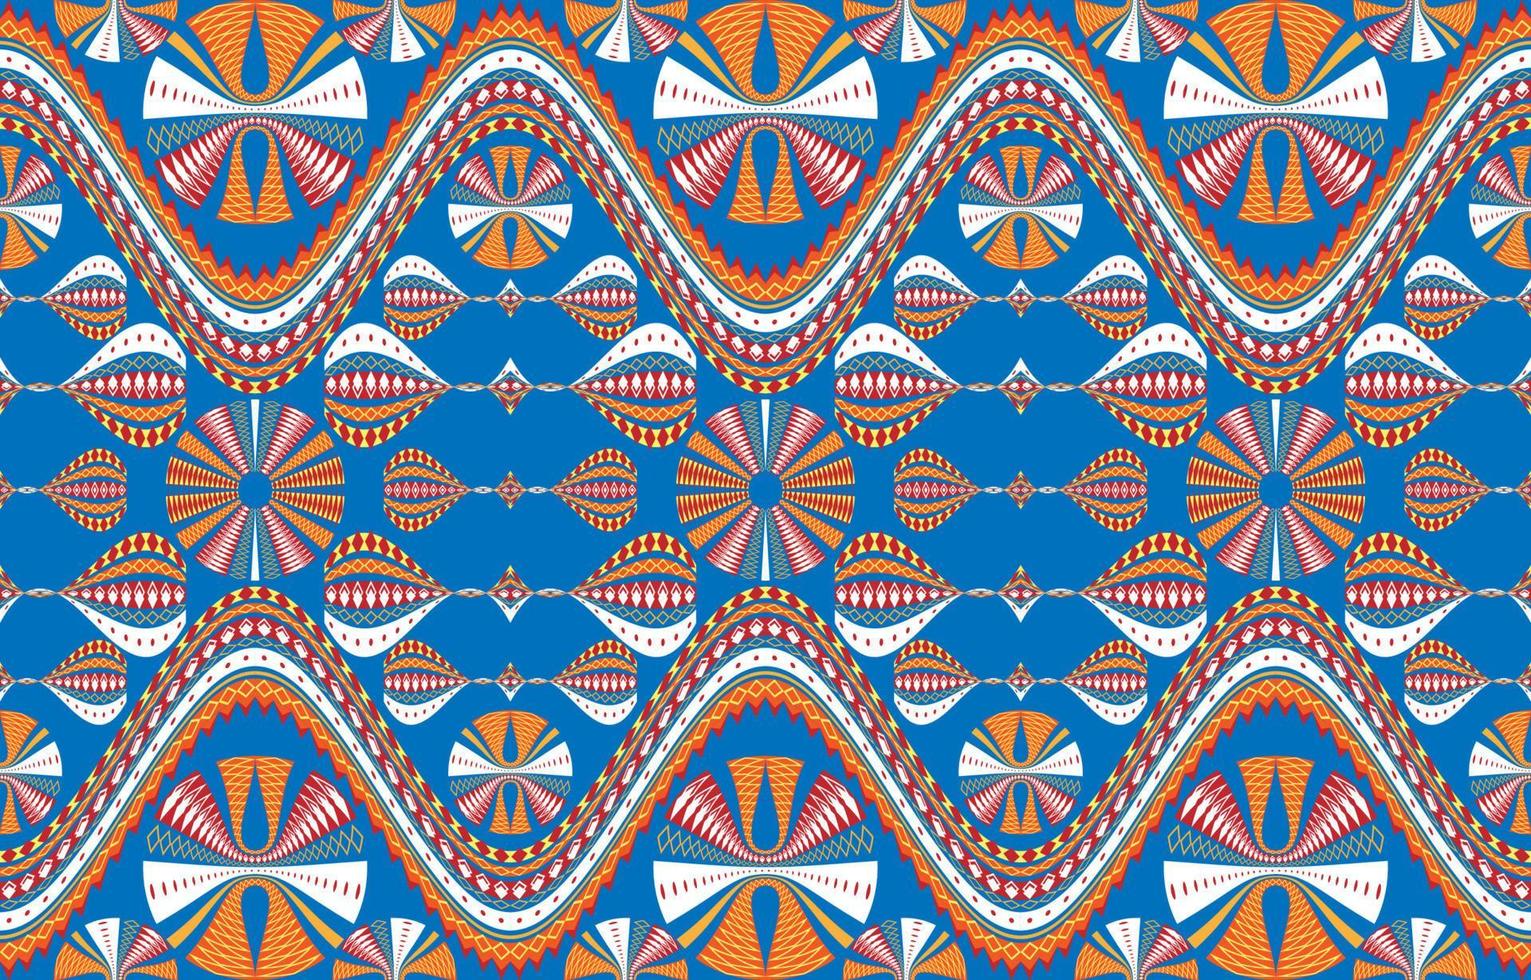 tela textil patrón círculo ondulado curva diagonal rayas. étnico geométrico tribal nativo azteca arabesco tela alfombra indio árabe africano patrones sin fisuras. estilo de bordado gráfico de línea ornamentada. vector